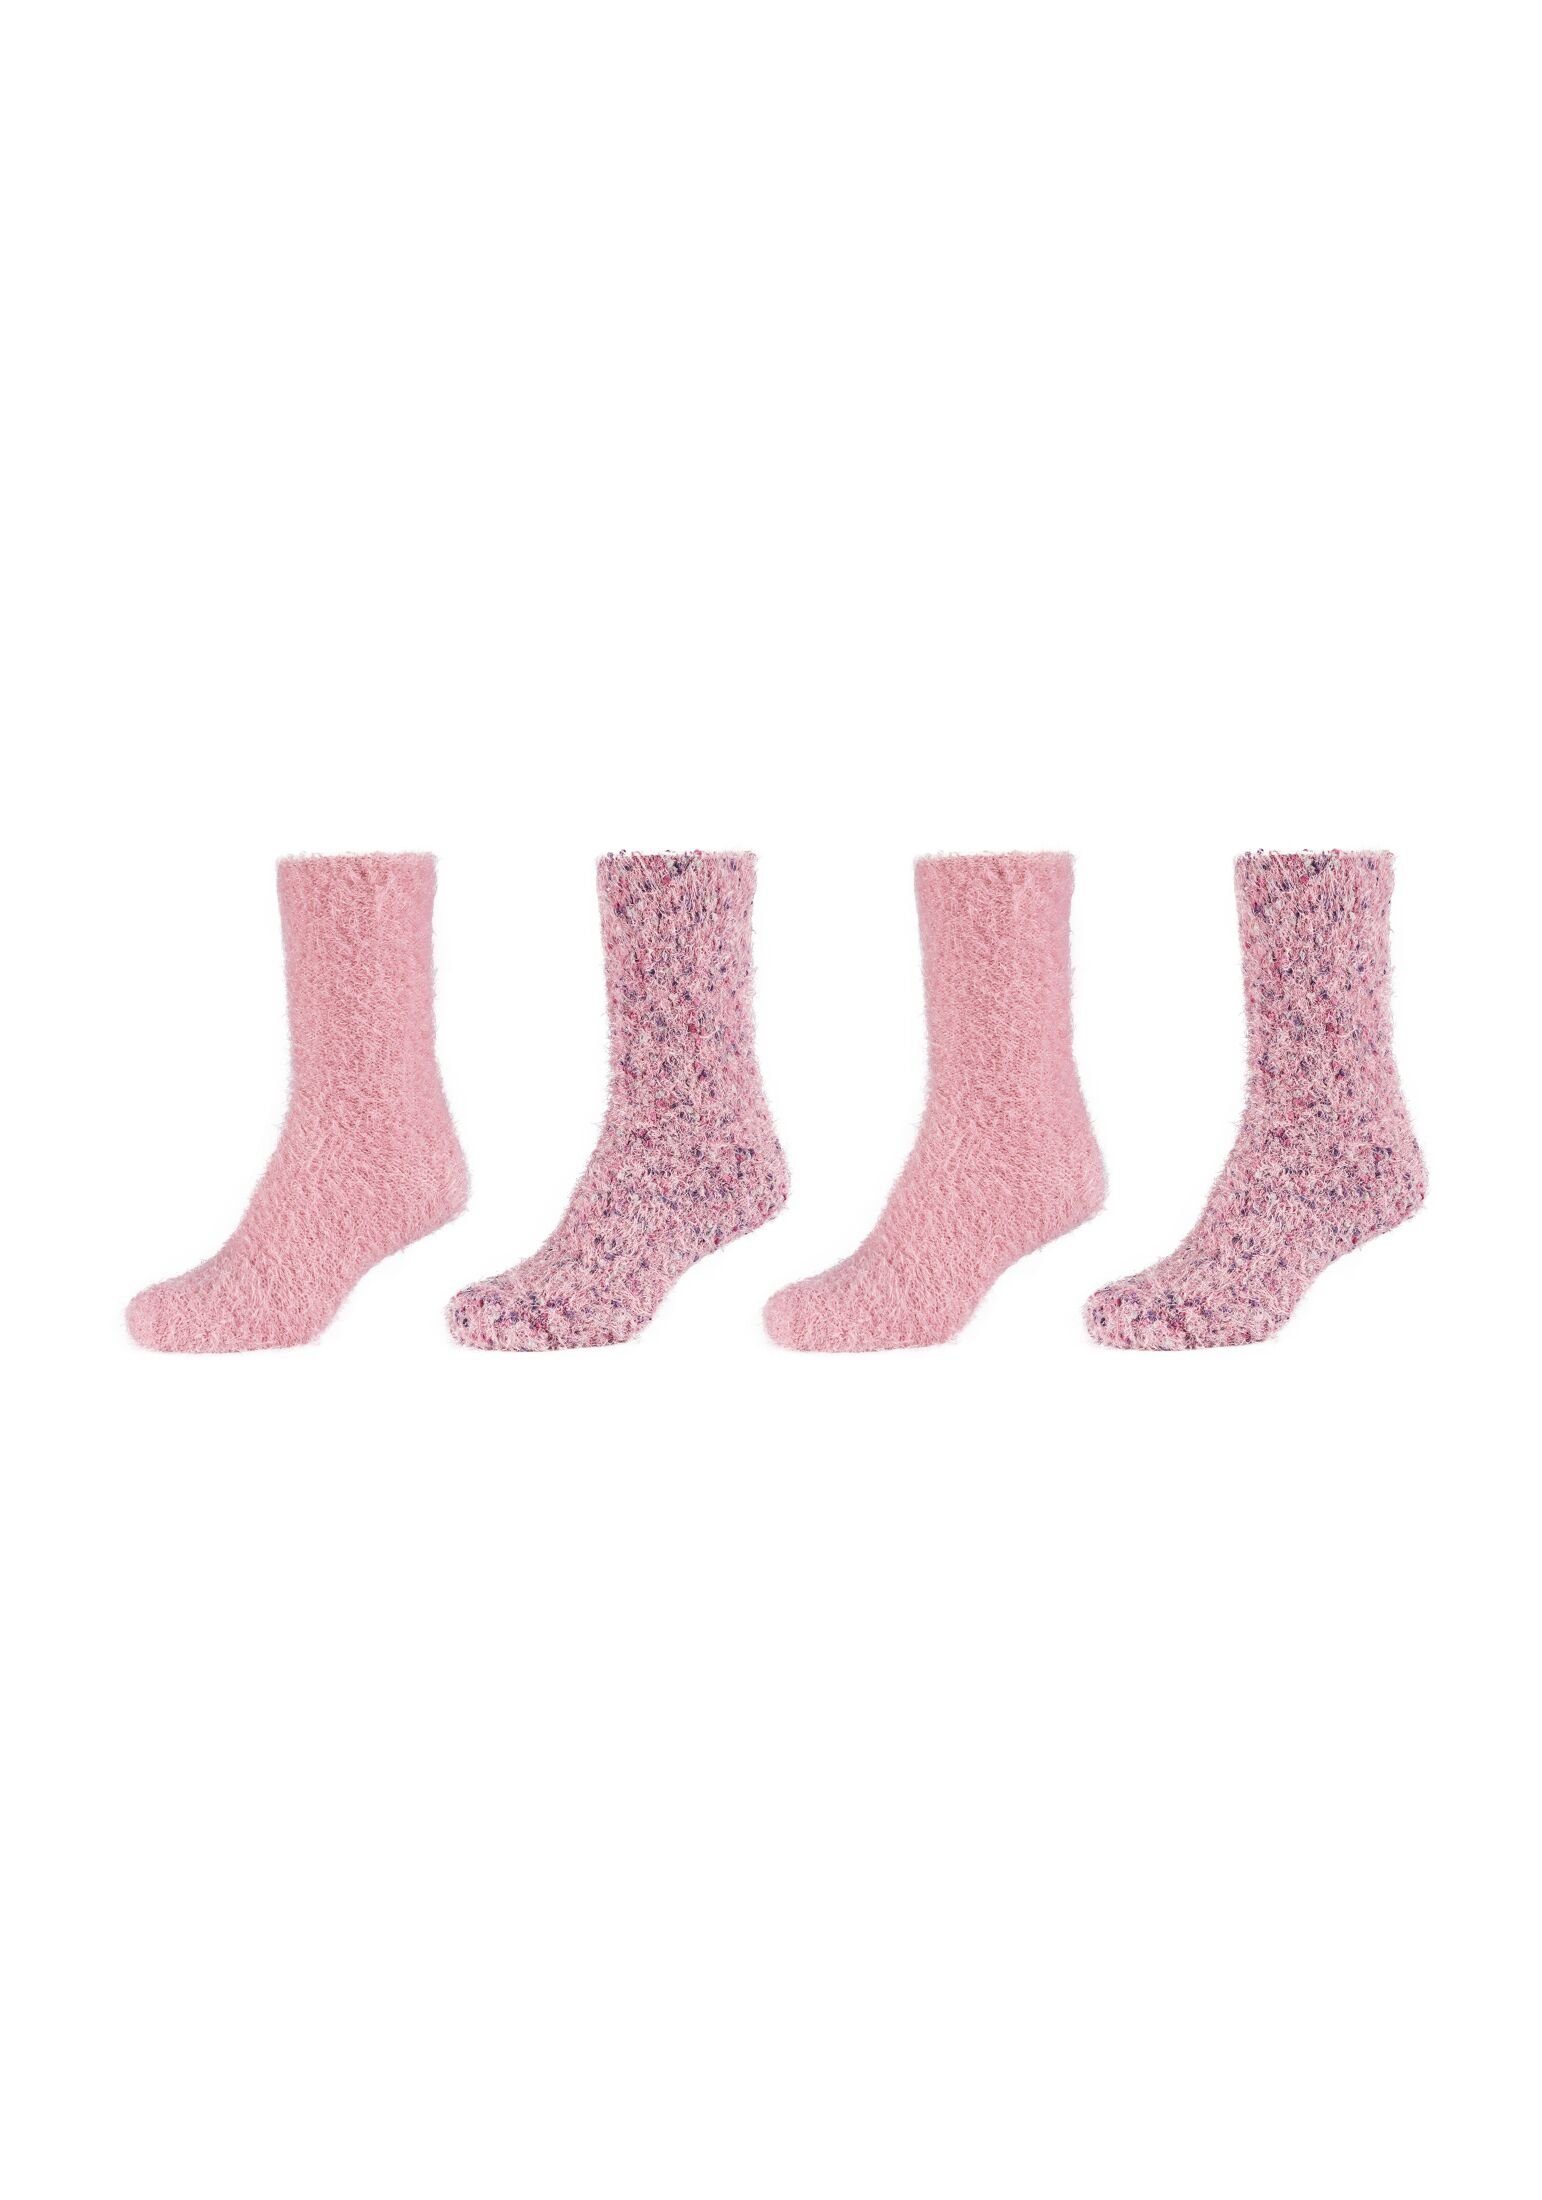 Camano Socken Socken 4er Pack dusty rose